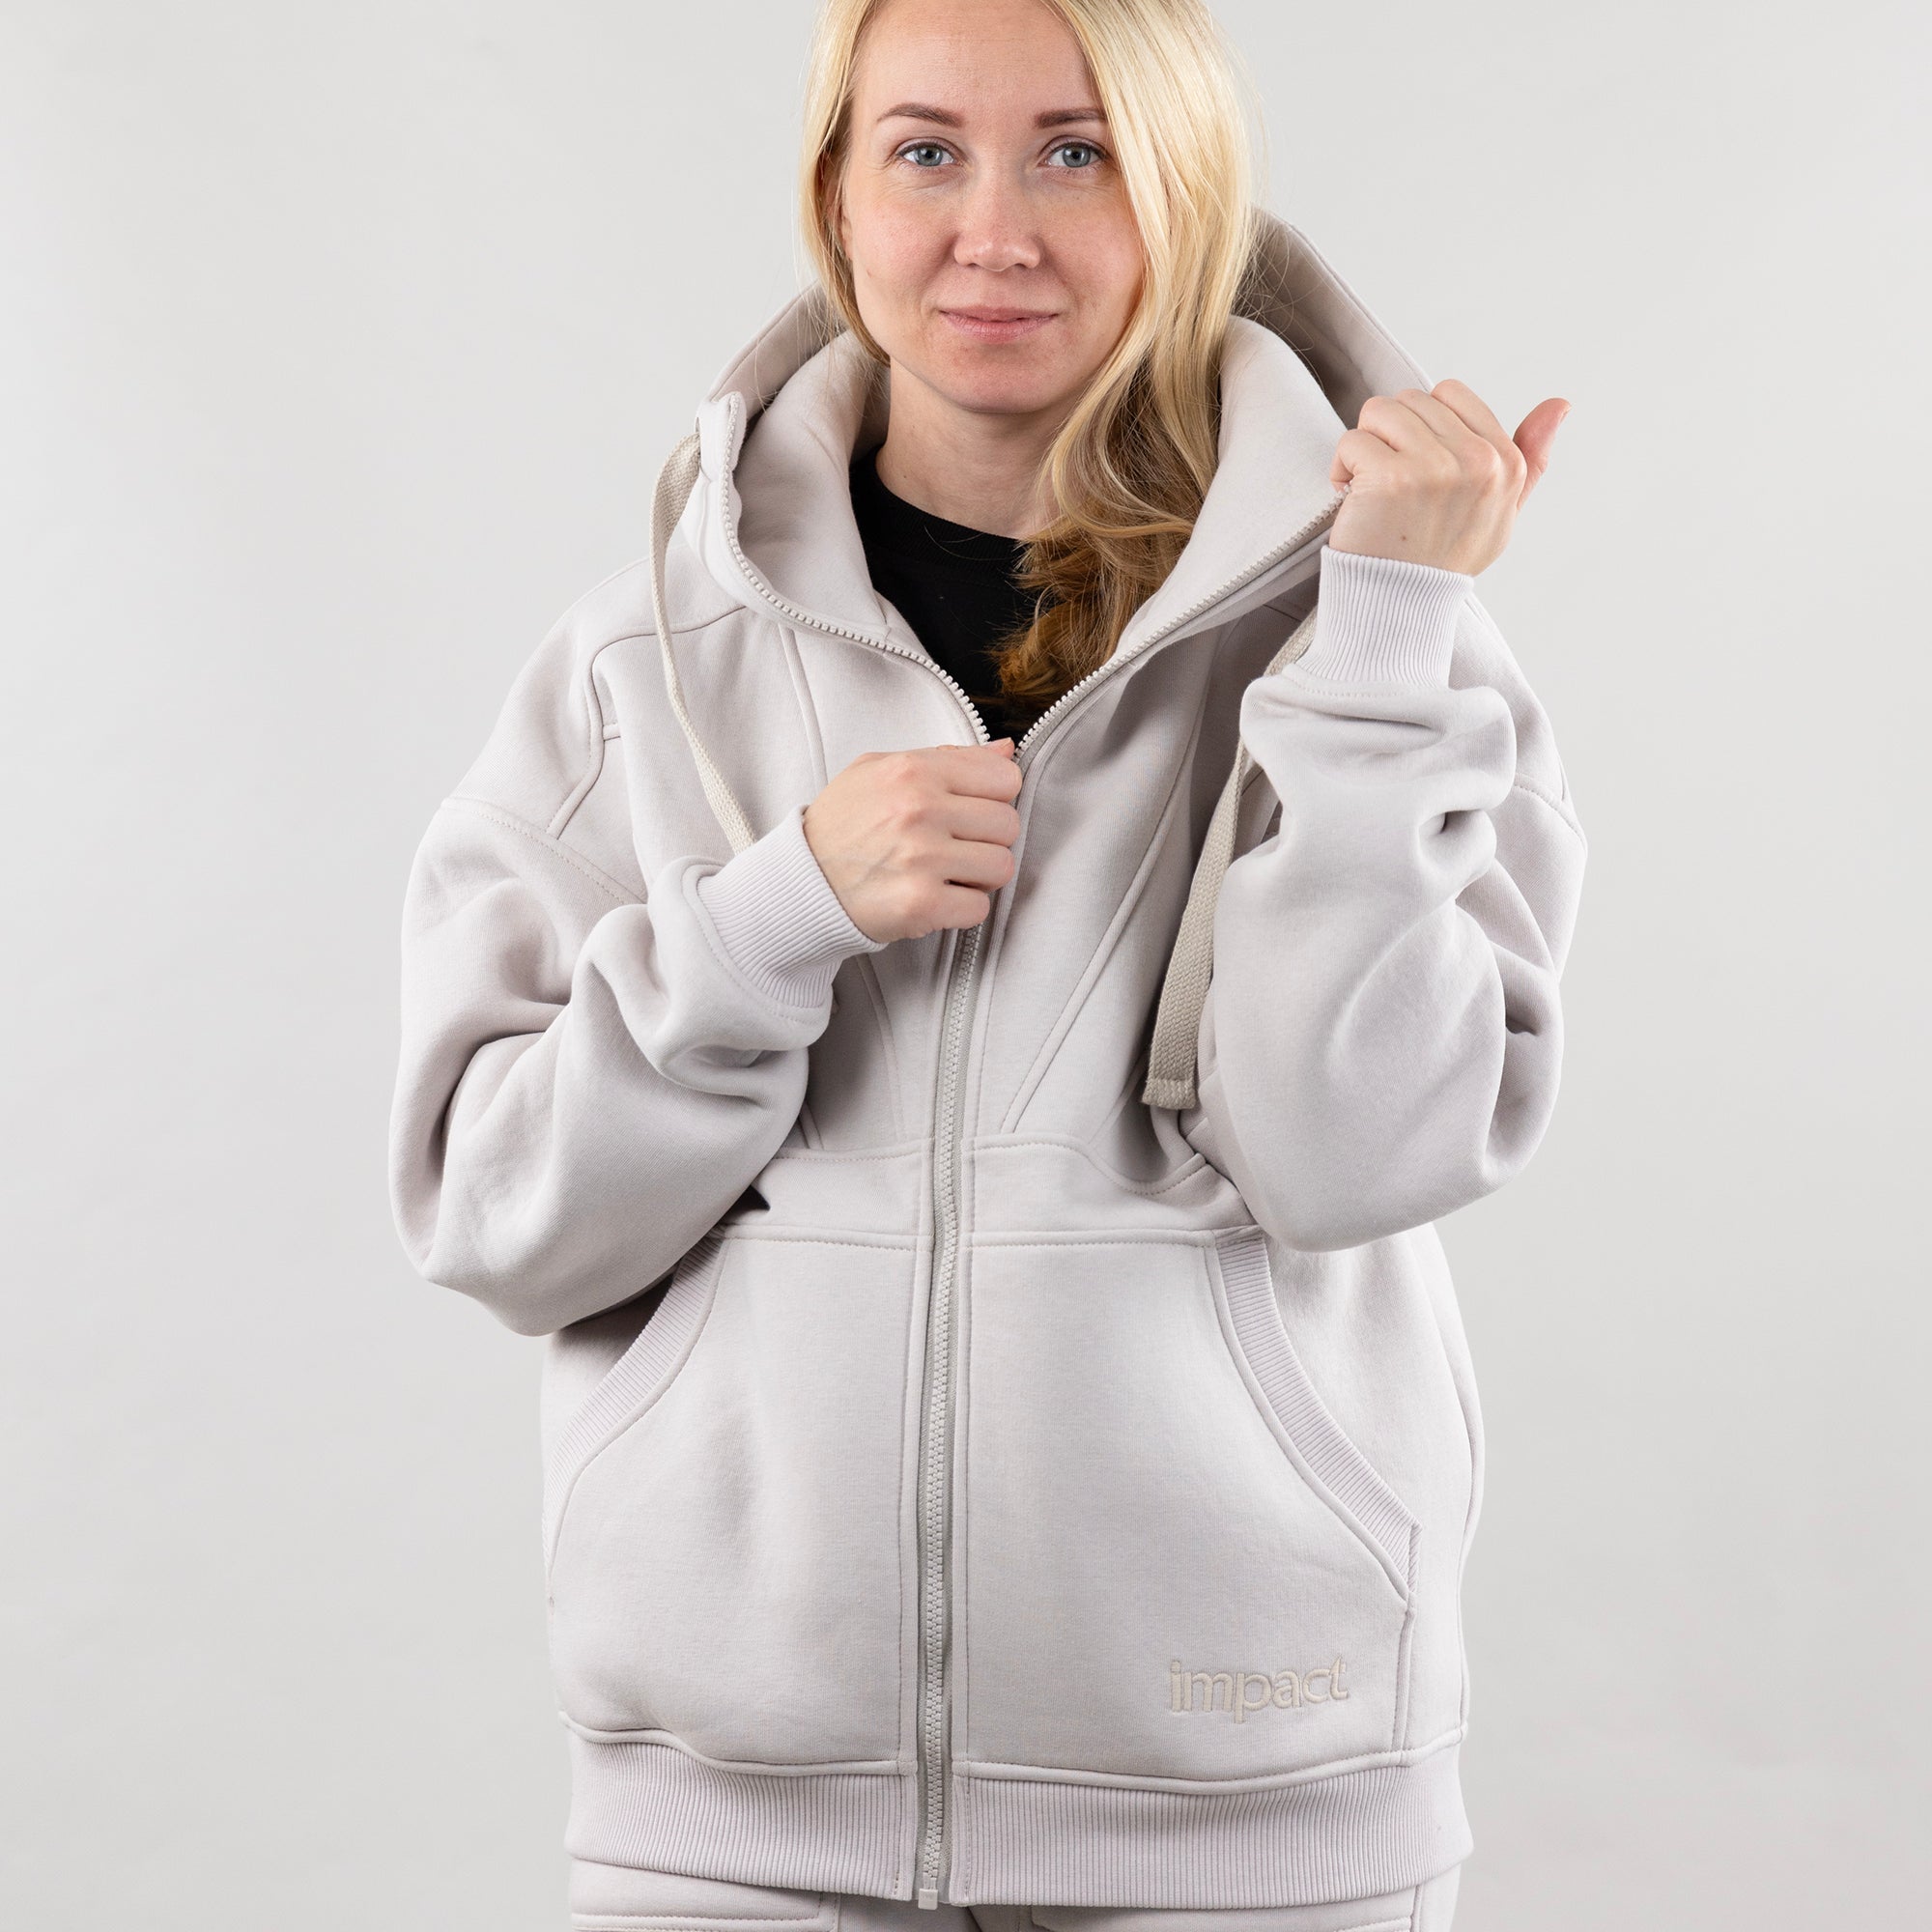 Hoodie "Introvert", warm casual zip-up hoodie for women